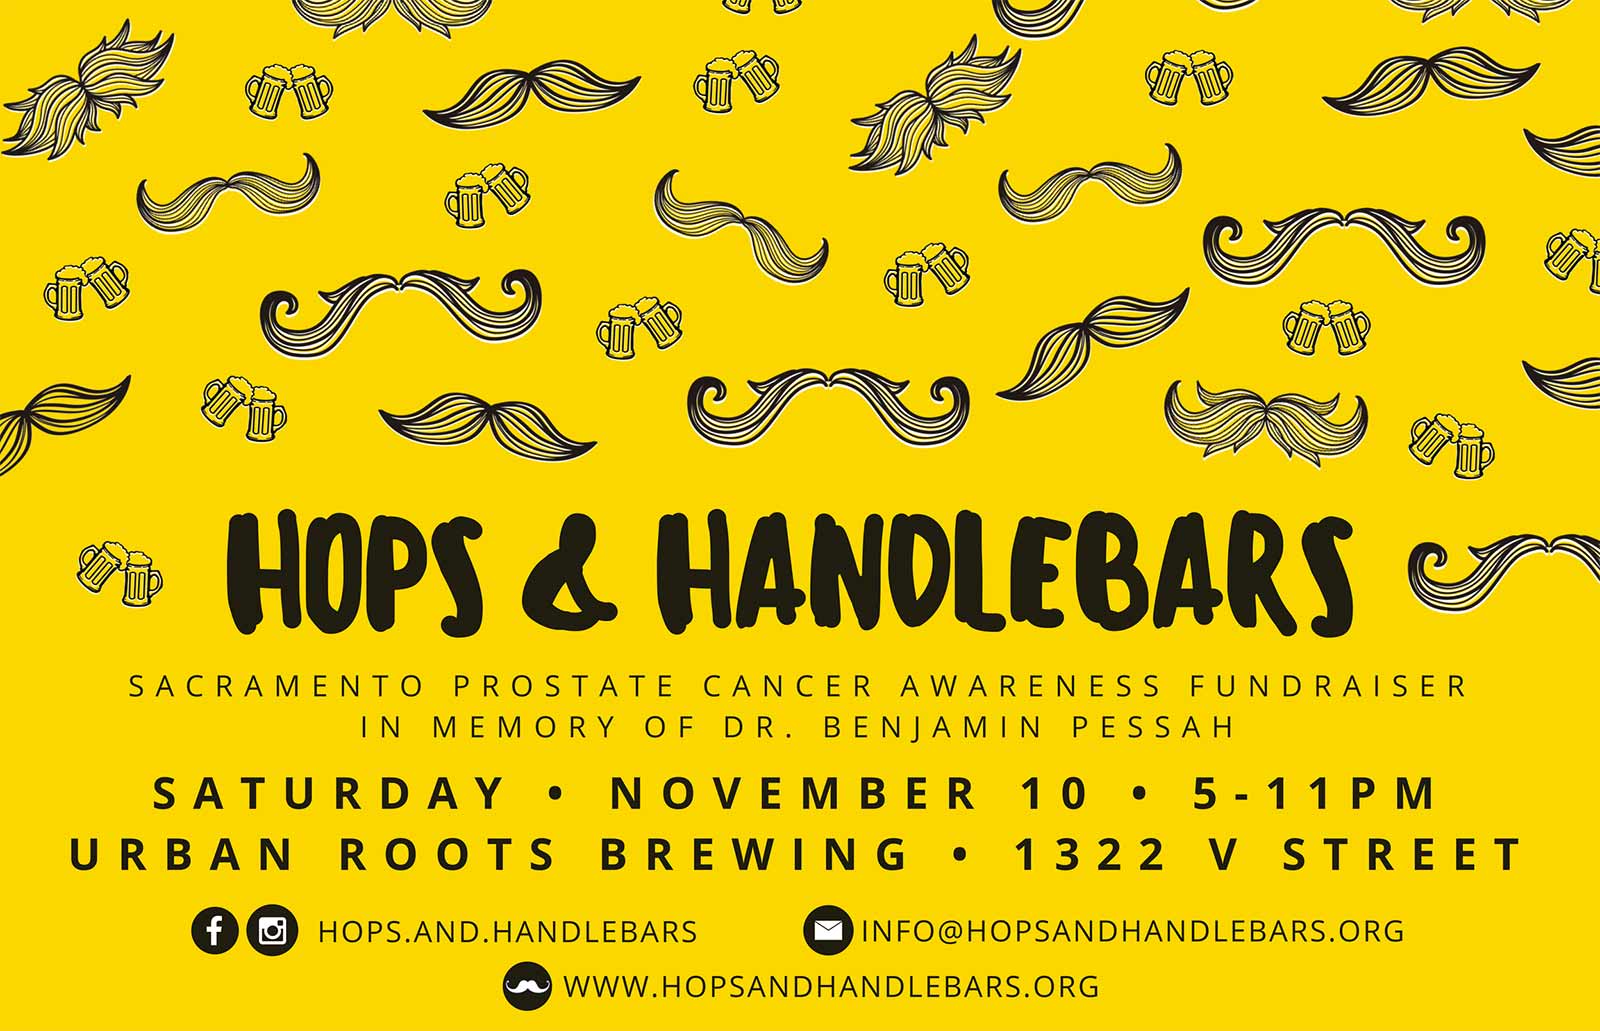 Hops & Handlebars 2018 - November 10